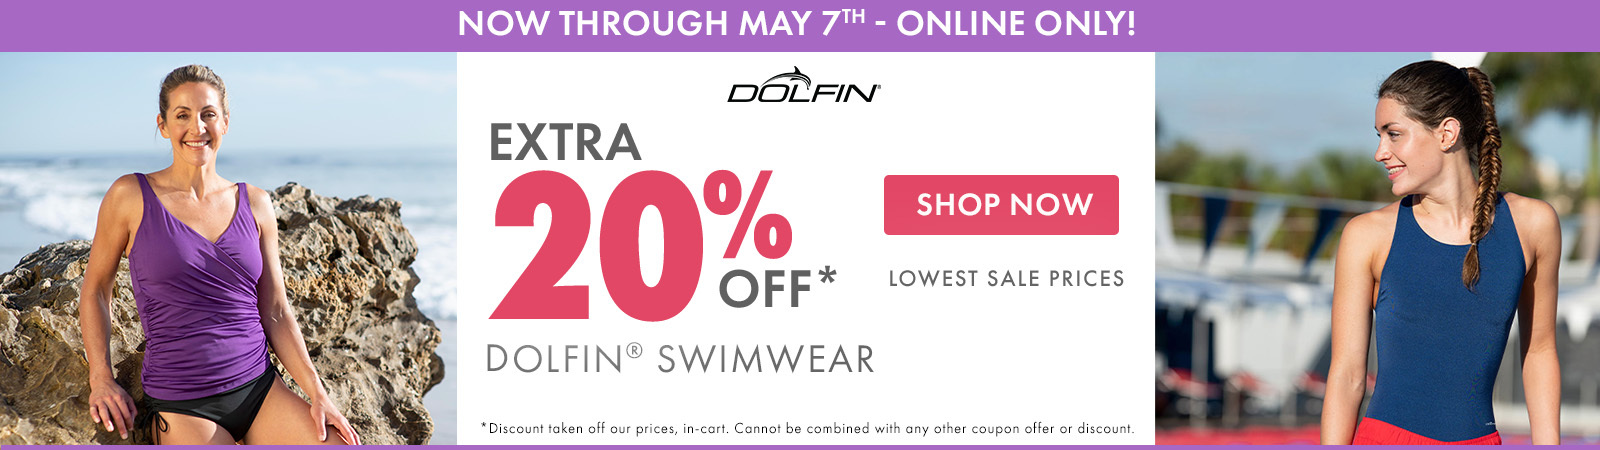 Extra 20% Off Dolfin Swimwear